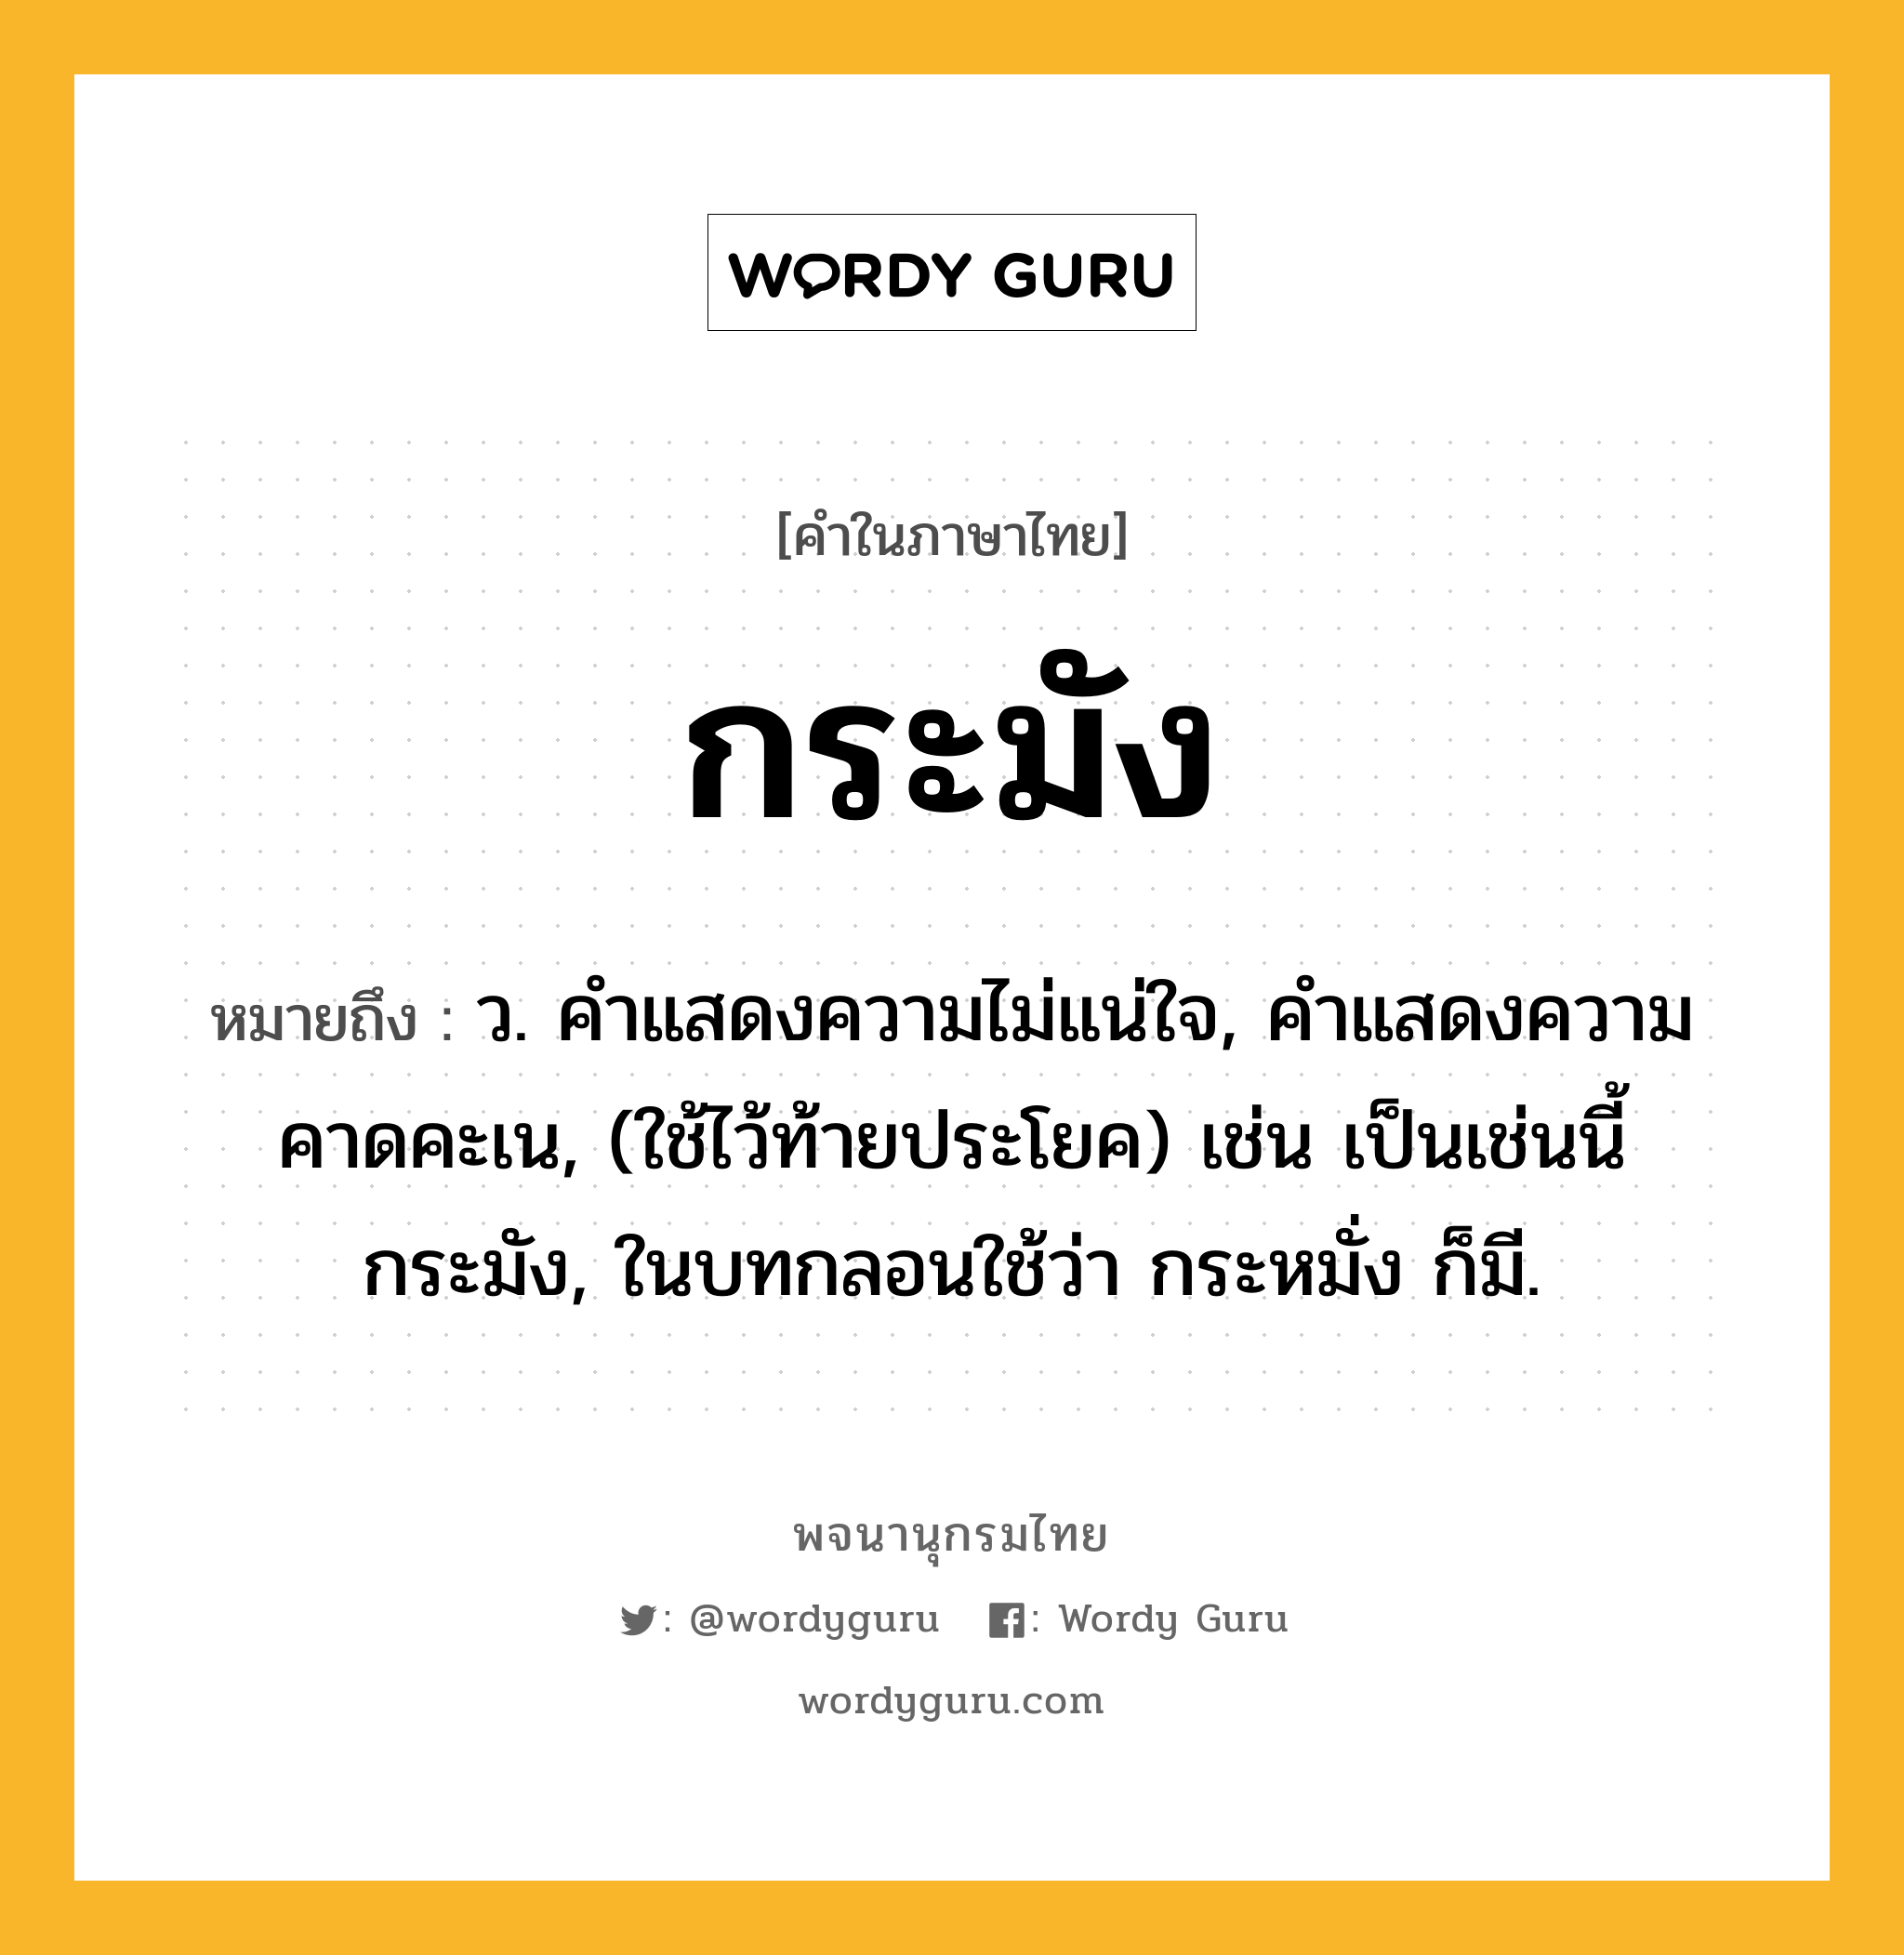 กระมัง หมายถึงอะไร?, คำในภาษาไทย กระมัง หมายถึง ว. คําแสดงความไม่แน่ใจ, คําแสดงความคาดคะเน, (ใช้ไว้ท้ายประโยค) เช่น เป็นเช่นนี้กระมัง, ในบทกลอนใช้ว่า กระหมั่ง ก็มี.